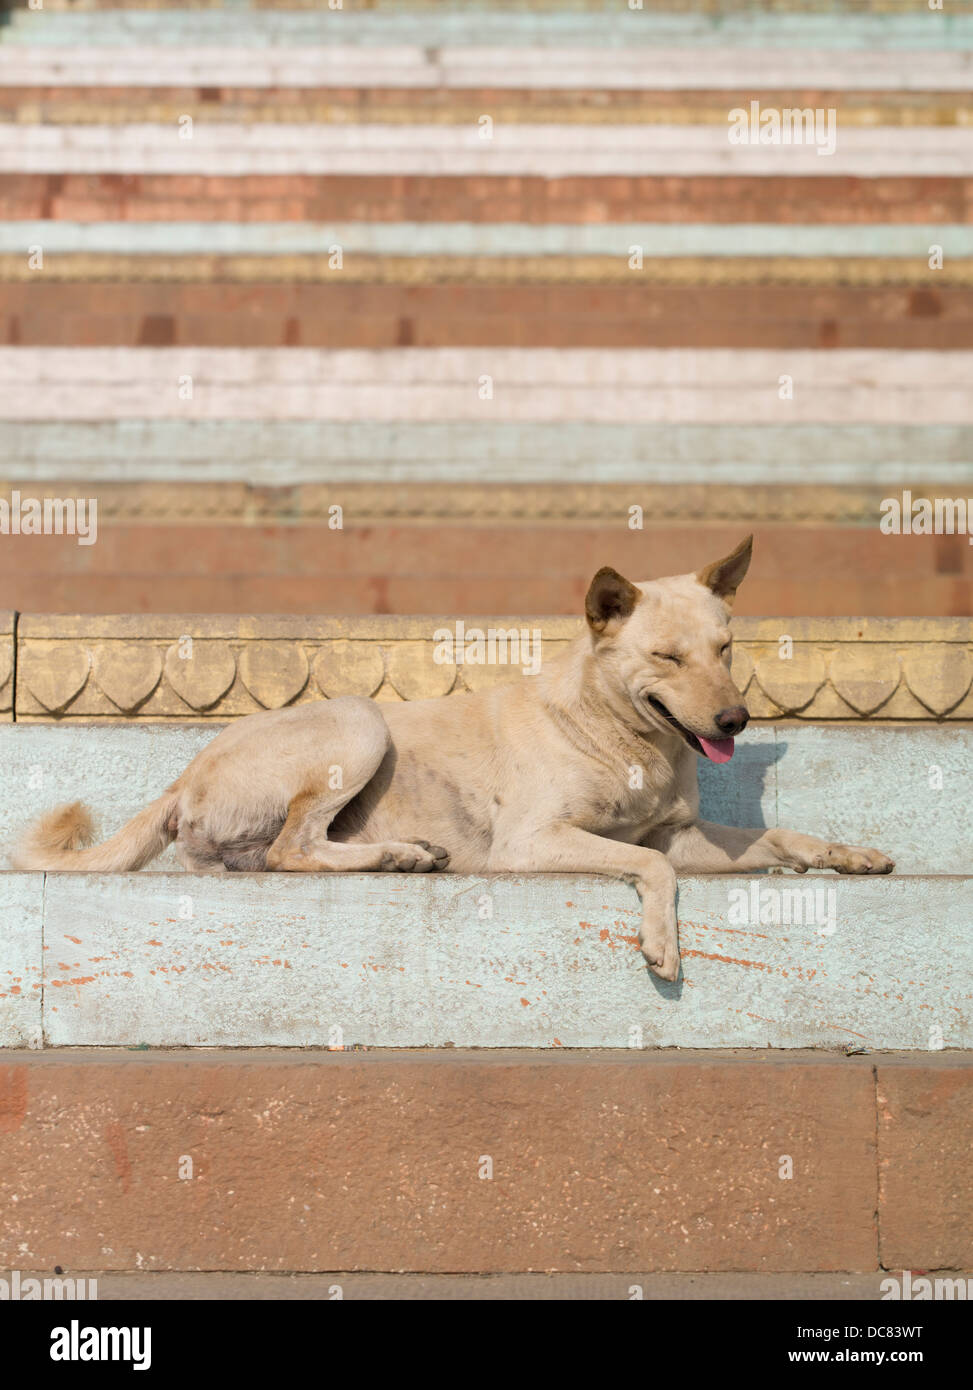 Estancia perro. La vida en las orillas del río Ganges - Varanasi, India Foto de stock